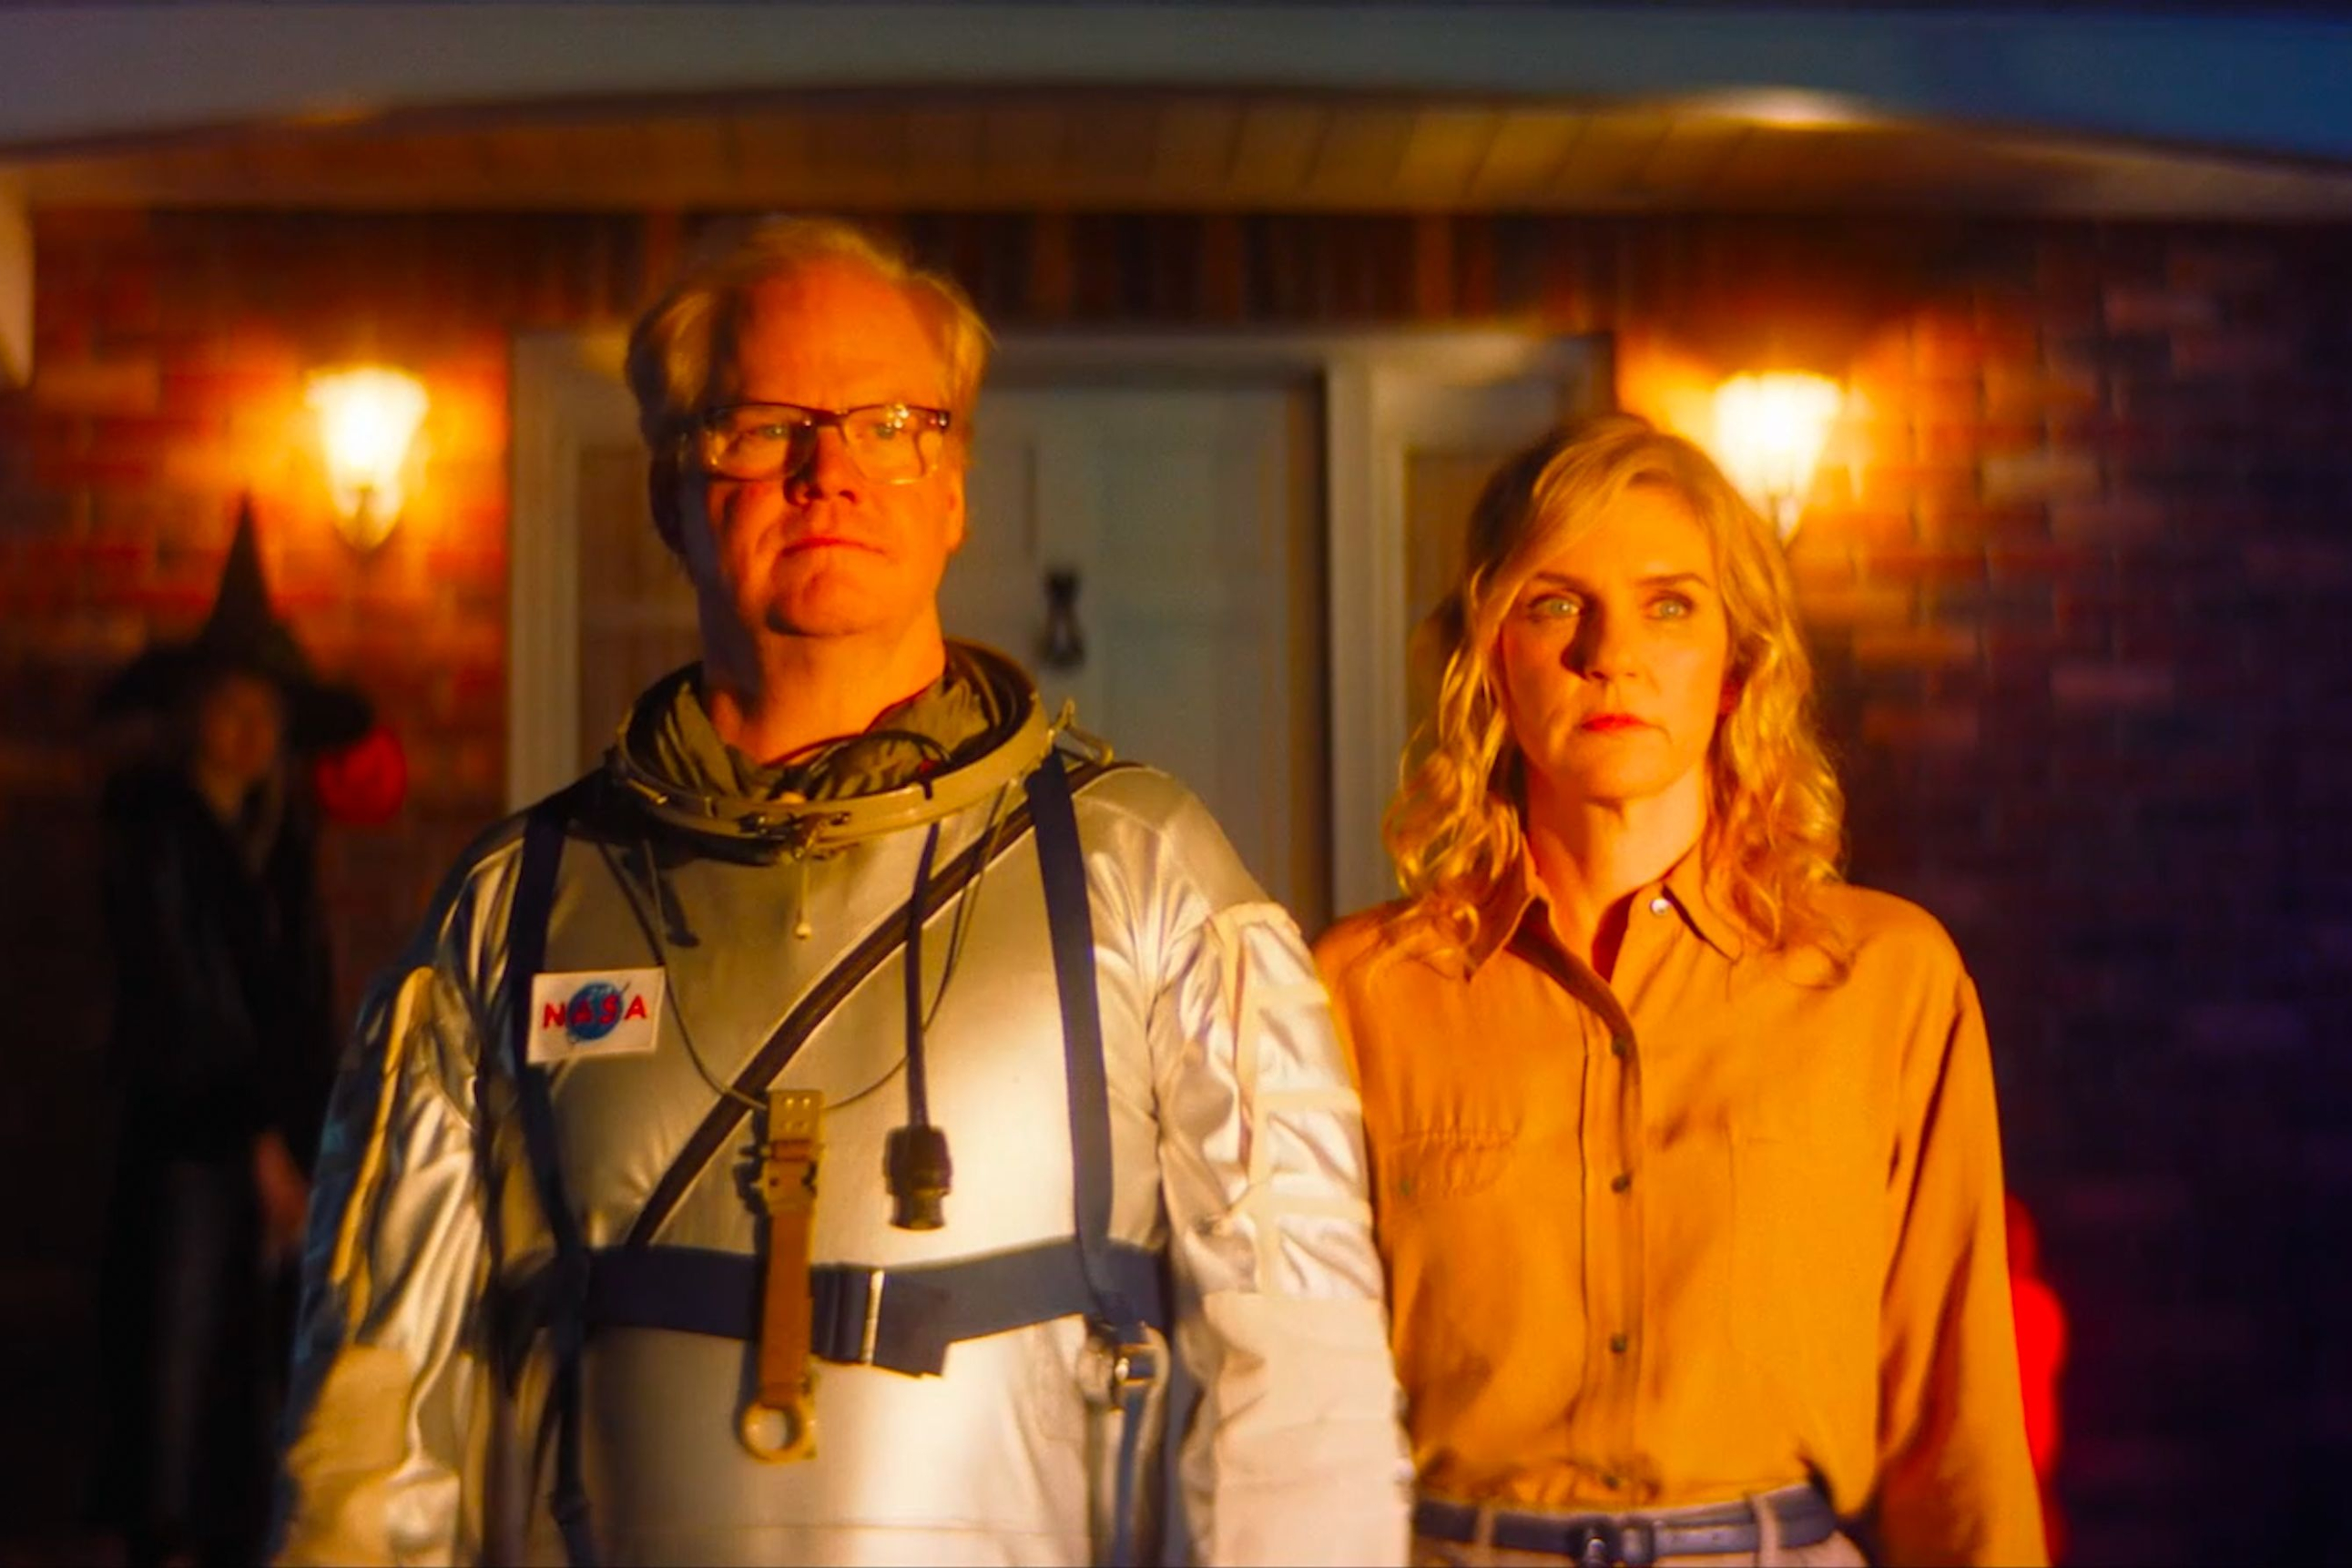 जिम गैफ़िगन लिनोलियम में रिया सीहॉर्न के बगल में खड़े होकर एक स्पेस सूट पहनते हैं।